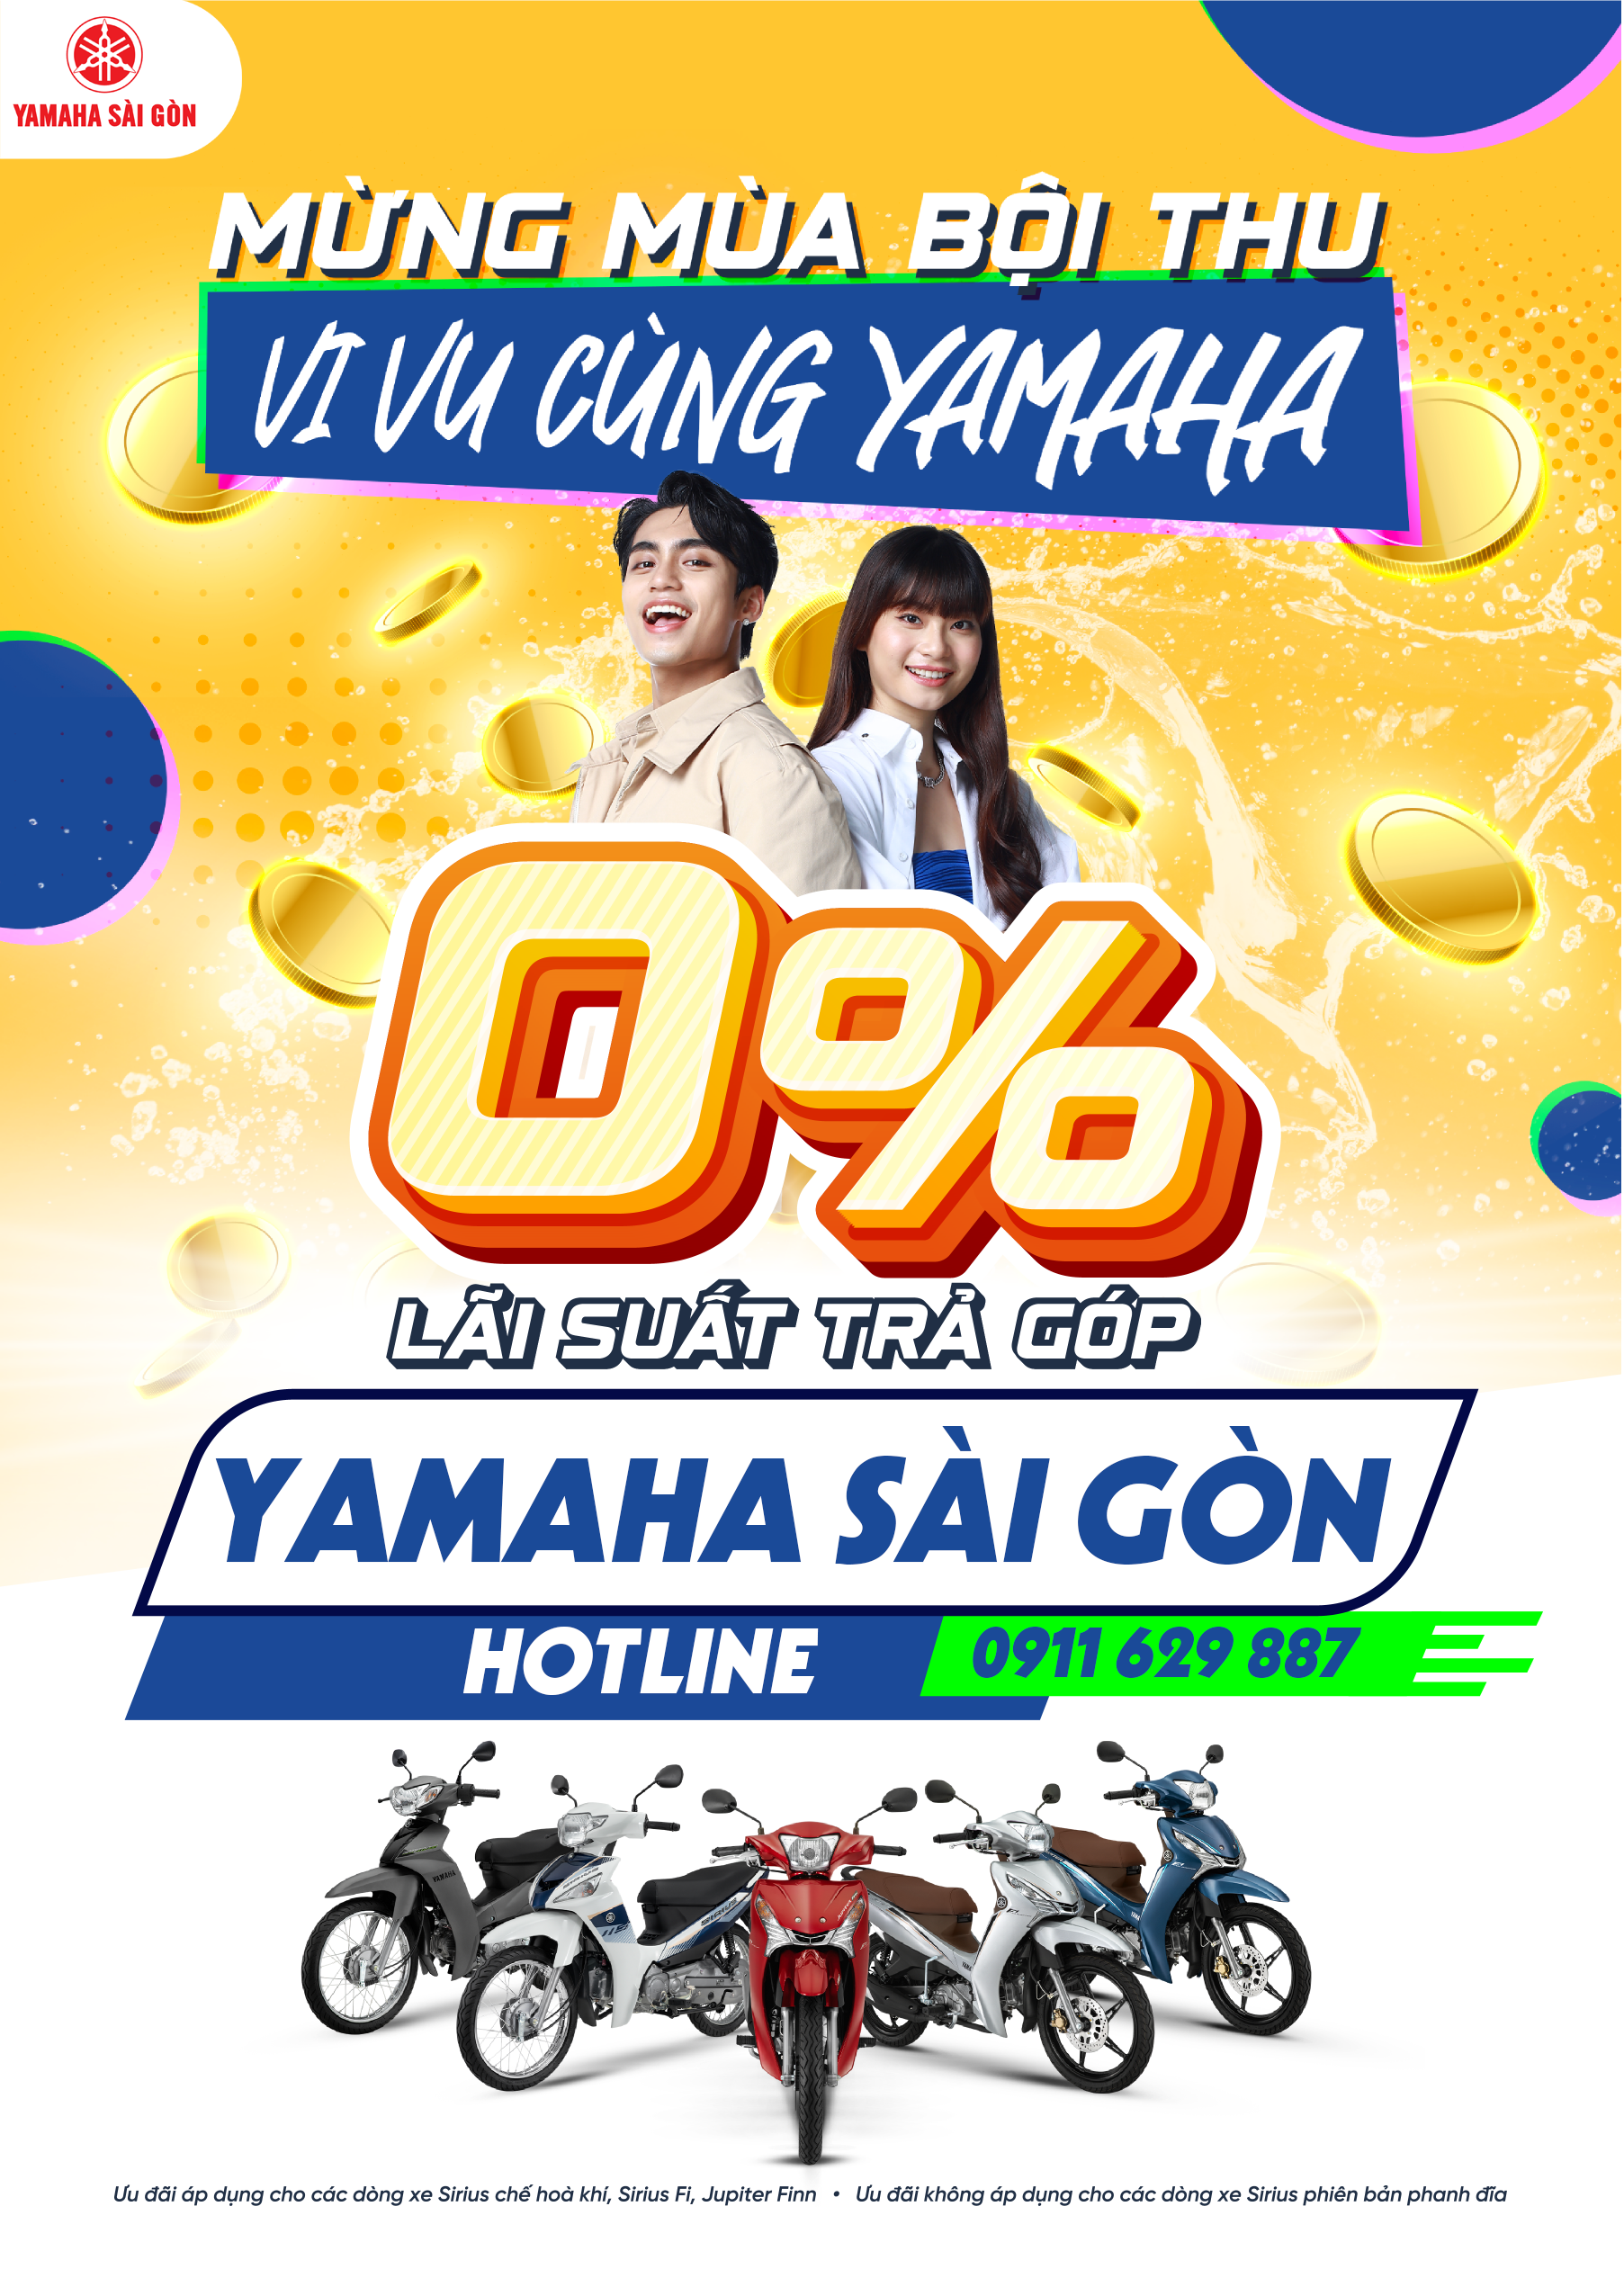 Yamaha Sài Gòn – Phân phối Yamaha chính hãng tại Cần Thơ, cung cấp phụ tùng  yamaha chính hãng tại Cần Thơ.